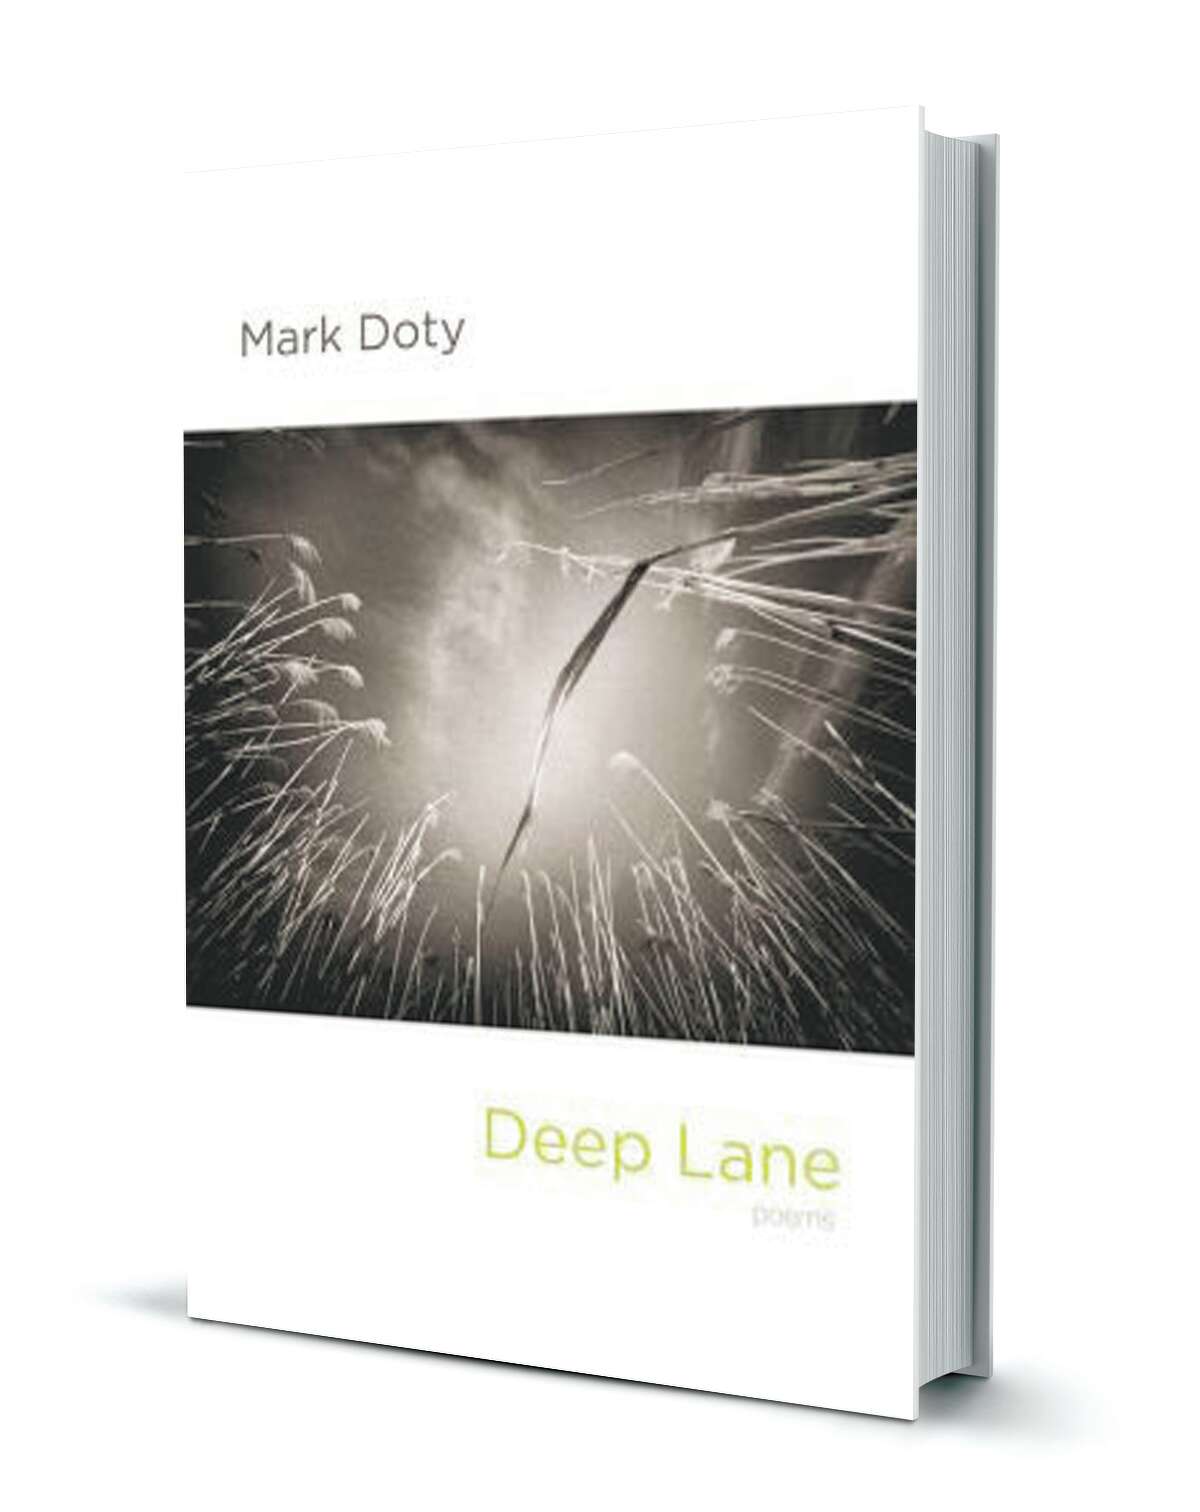 Mark Doty